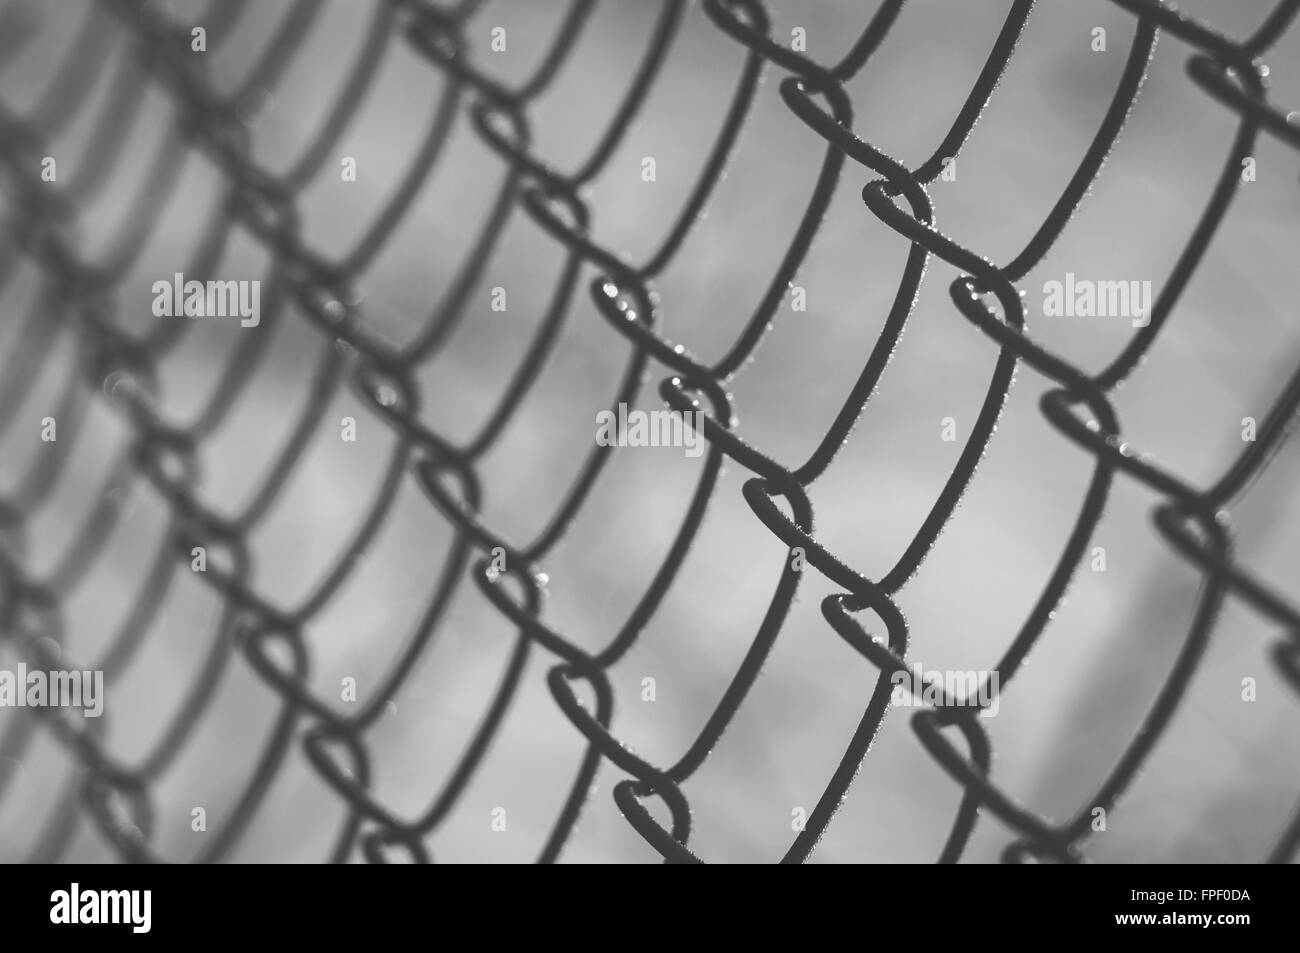 Closeup auf Drahtgeflecht abgedeckt mit Raureif auf Sunrise, geringe Schärfentiefe, schwarz / weiß Bild Stockfoto